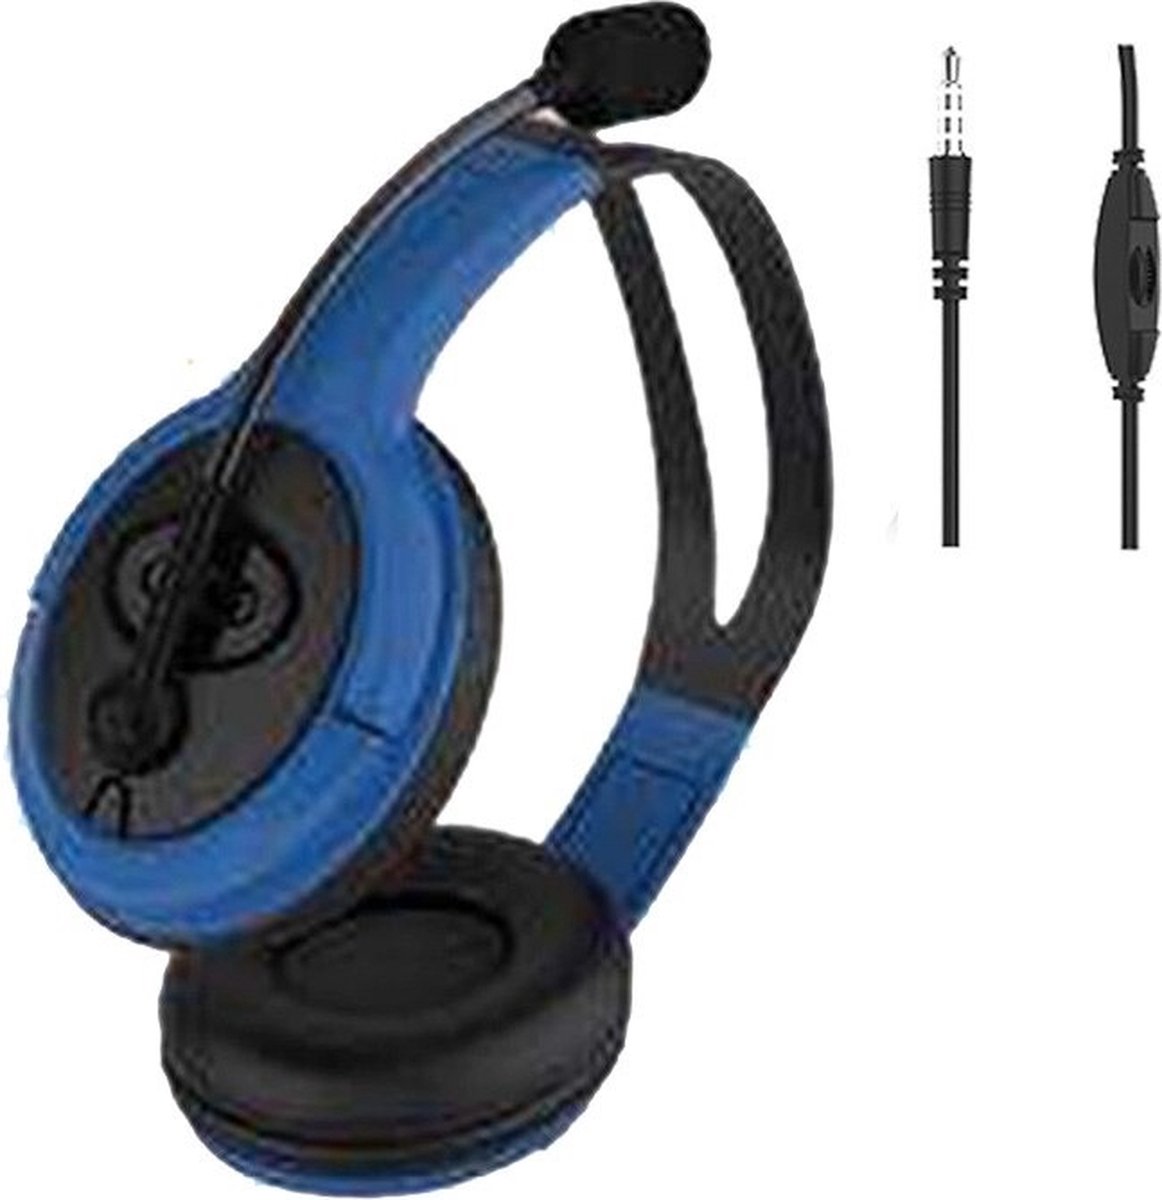 Gaming headset met microfoon - hoofdtelefoon voor tv, telefoon, computer en tablet - Blauw